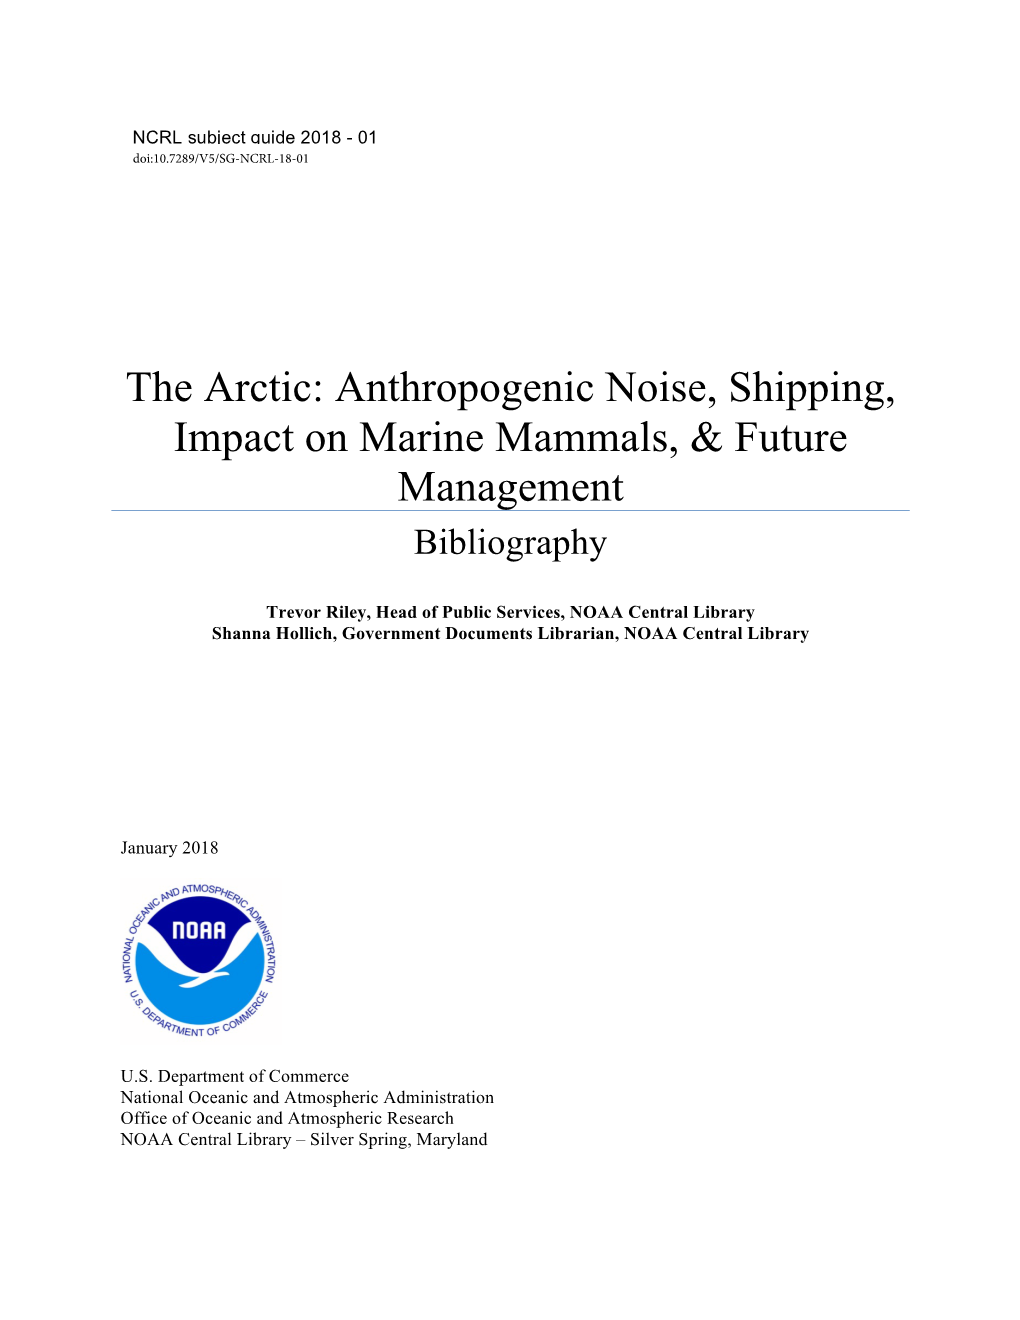 The Arctic Anthropogenic Noise, Shipping, Impact on Marine